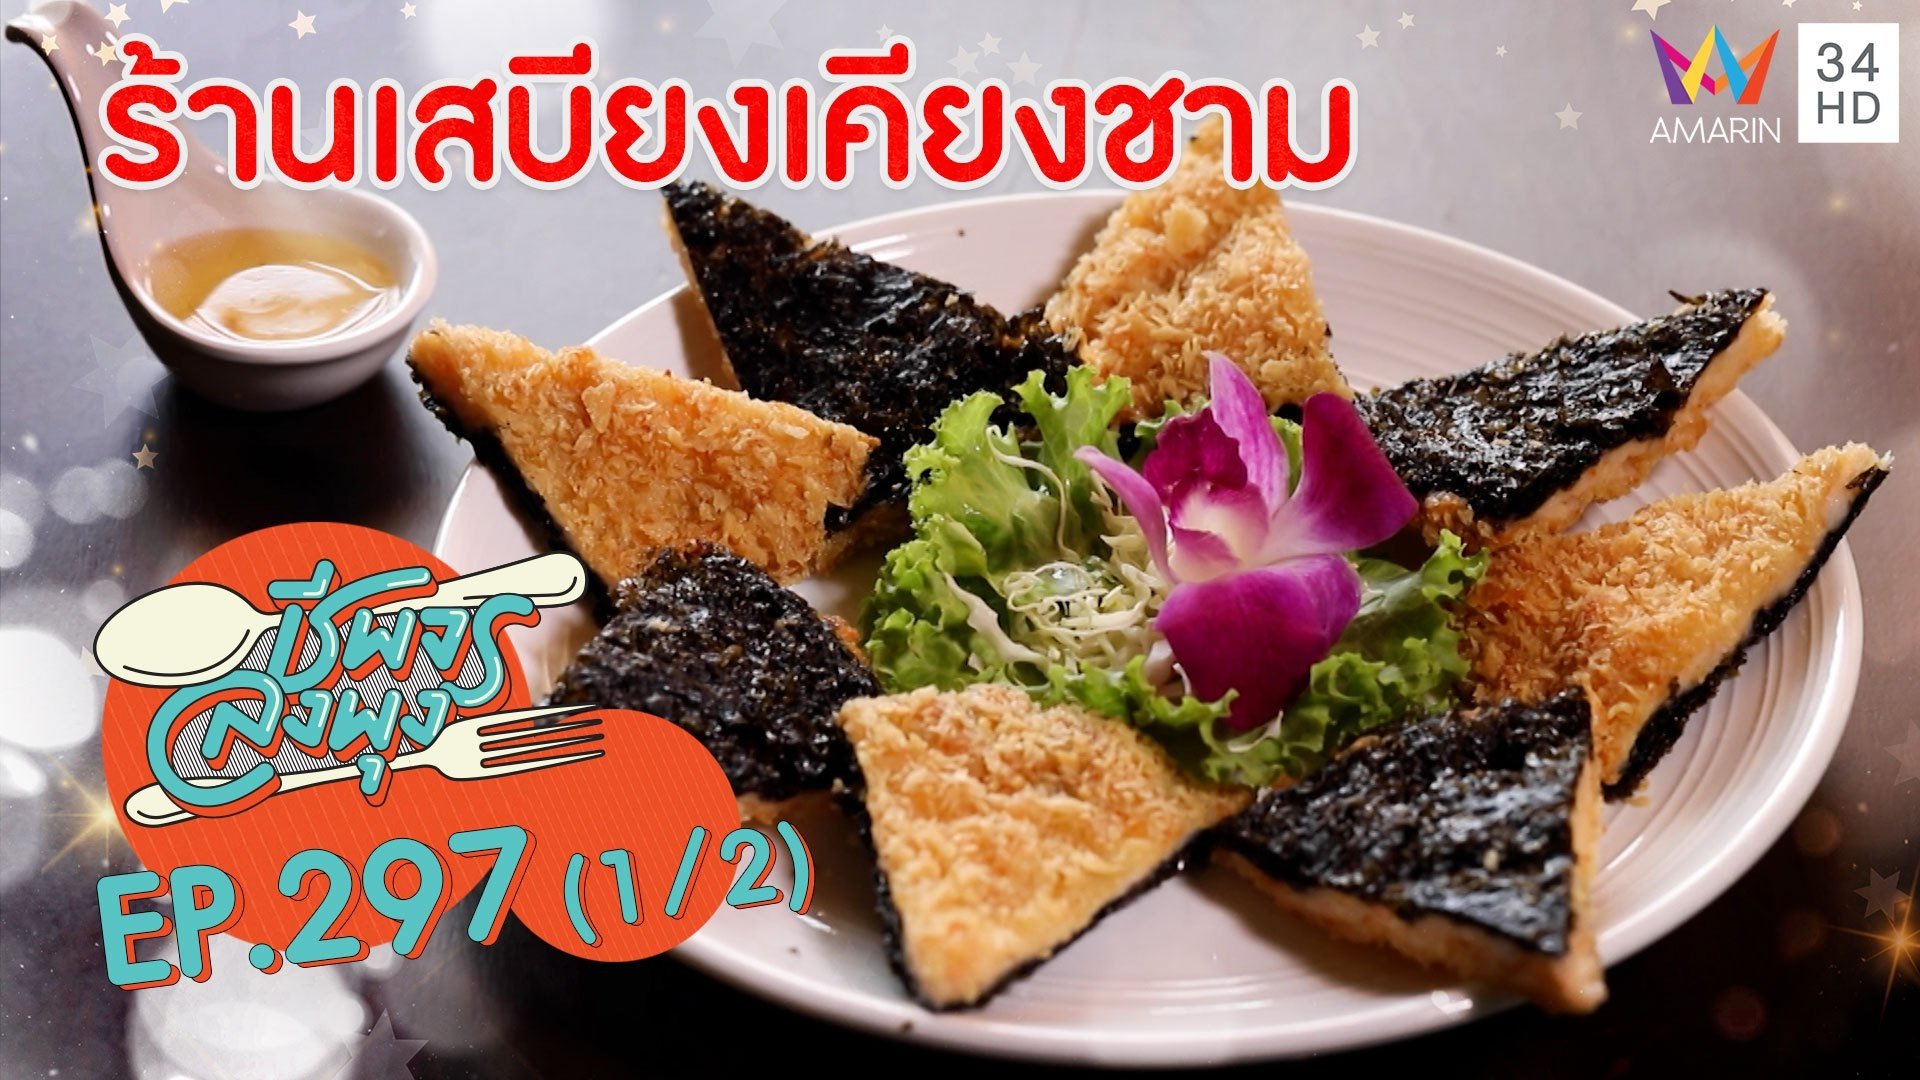 สายแซ่บห้ามพลาด อาหารไทยรสจัดจ้าน @ ร้านเสบียงเคียงชาม | ชีพจรลงพุง | 25 เม.ย. 64 (1/2) | AMARIN TVHD34